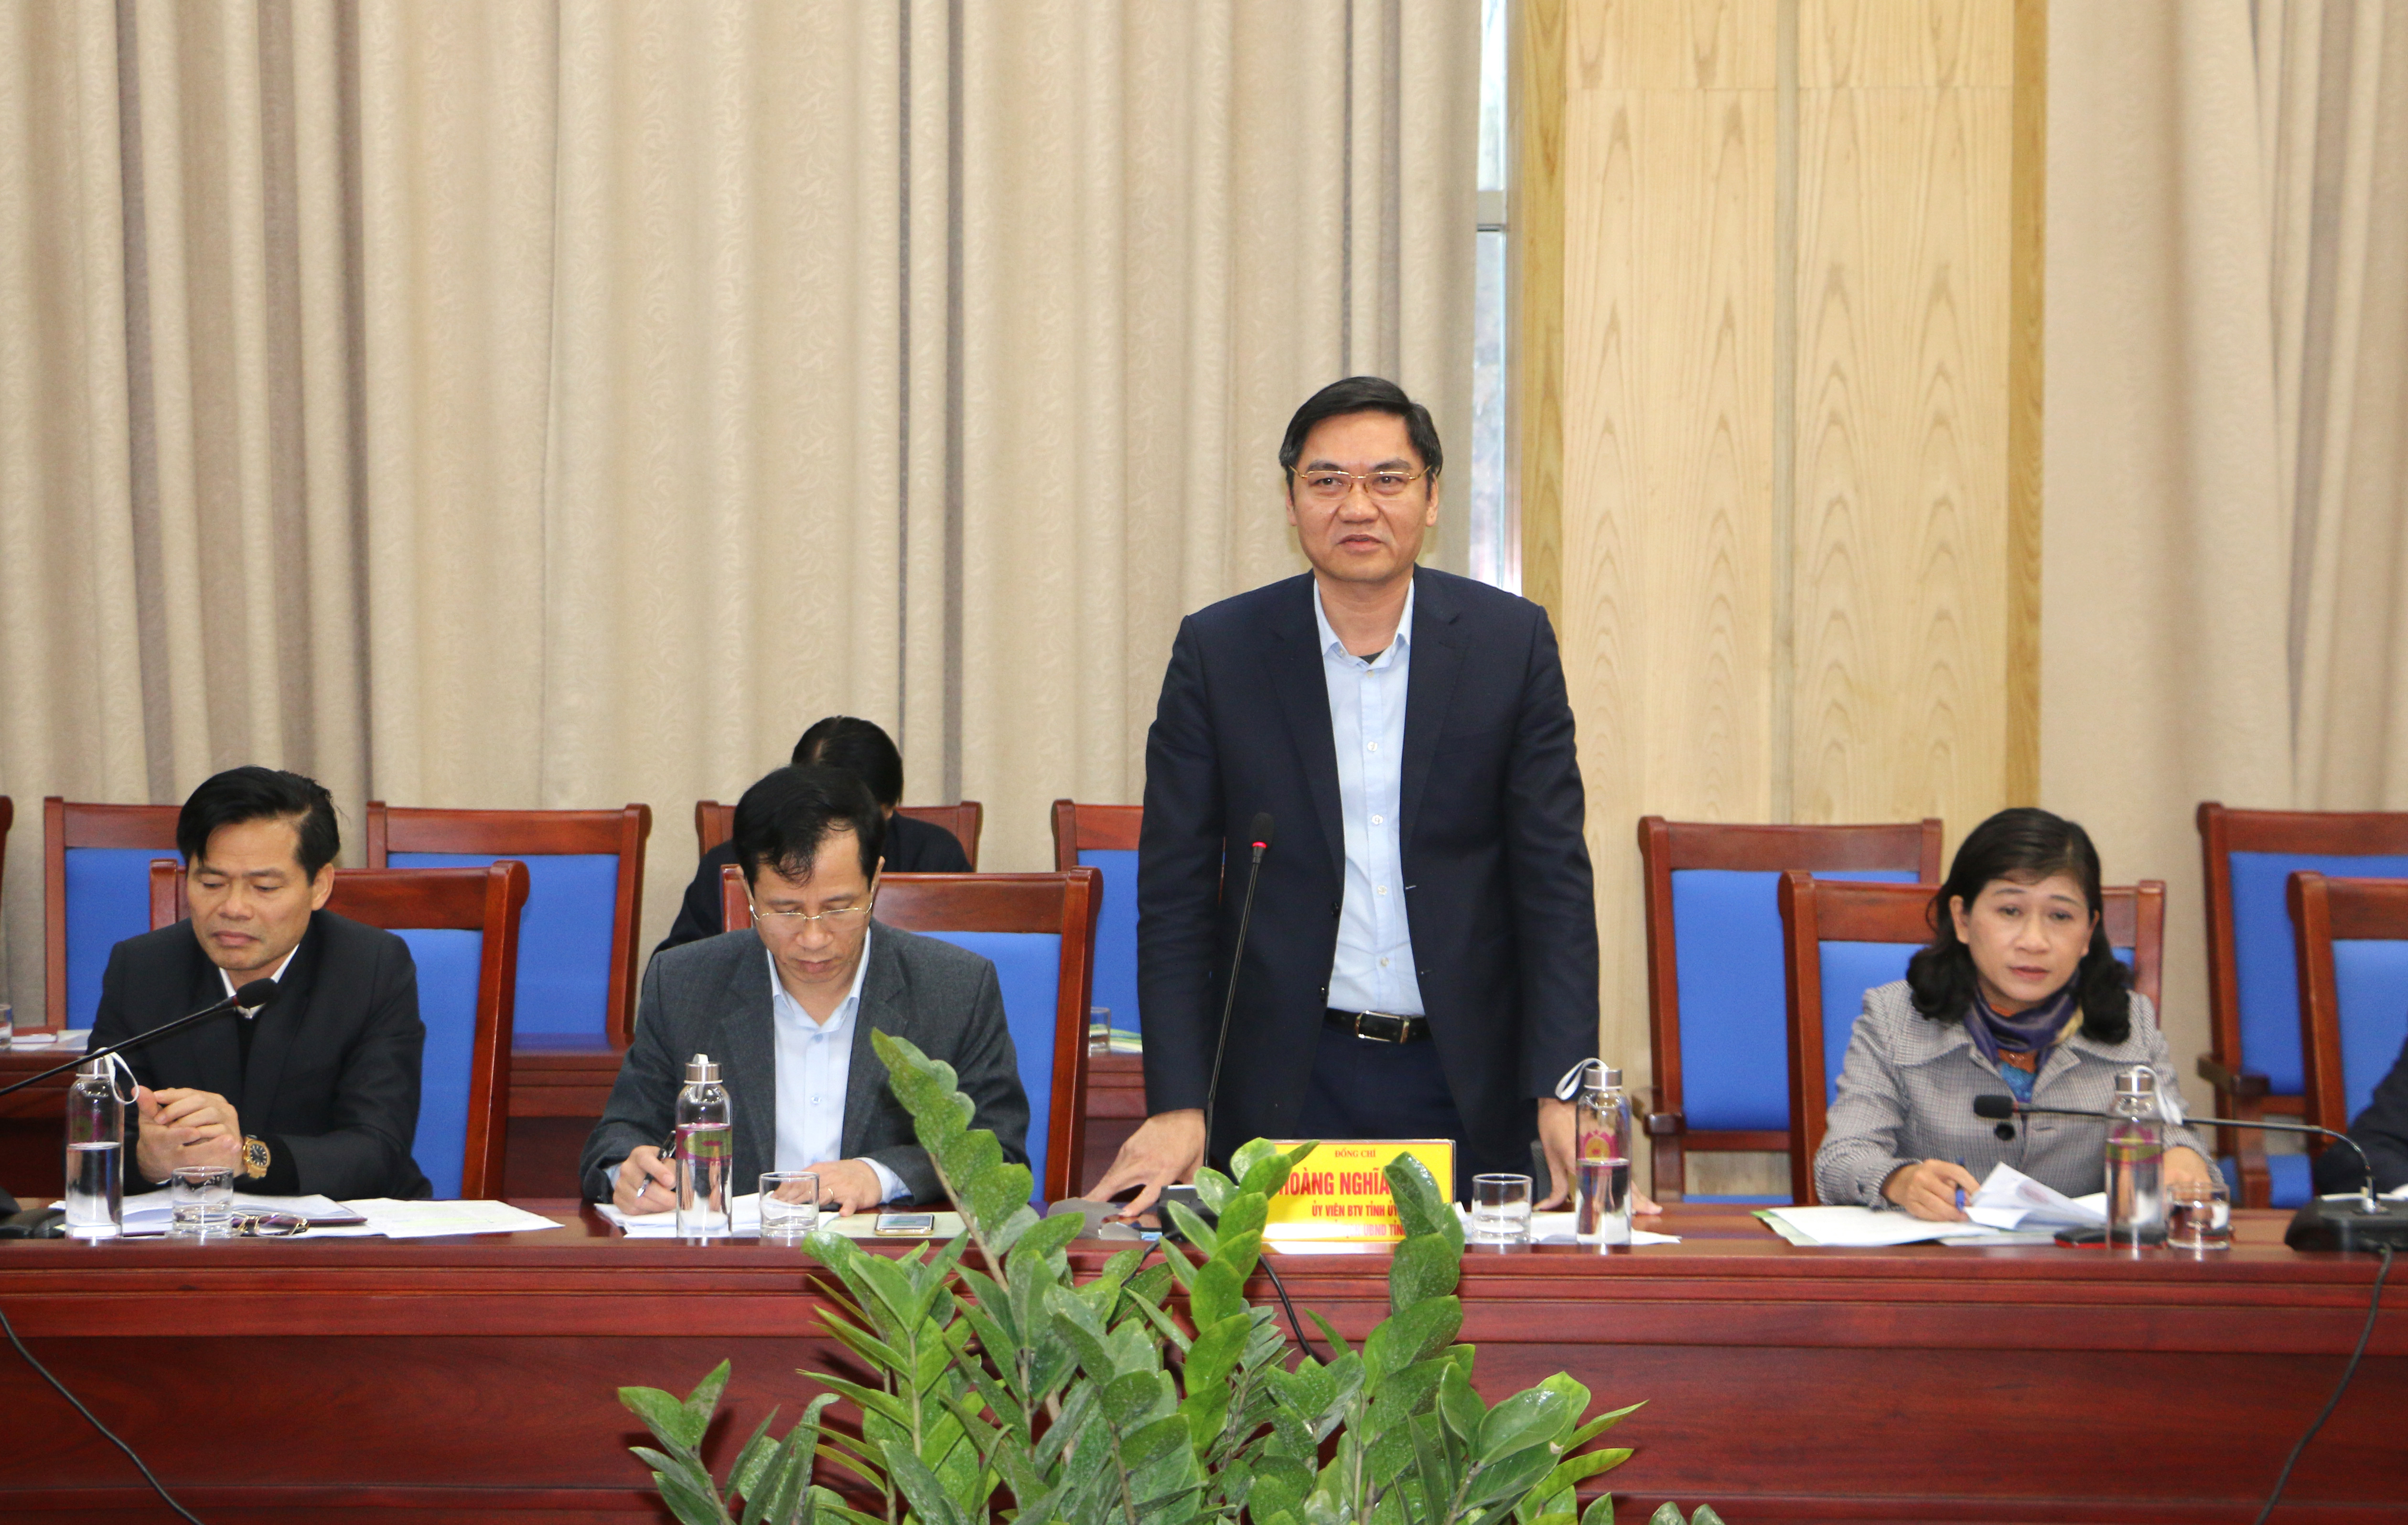 Đồng chí Hoàng Nghĩa Hiếu - Phó Chủ tịch UBND tỉnh phát biểu phúc đáp một số gợi ý của các bộ ngành về xây dựng NTM. Ảnh: Nguyễn Hải